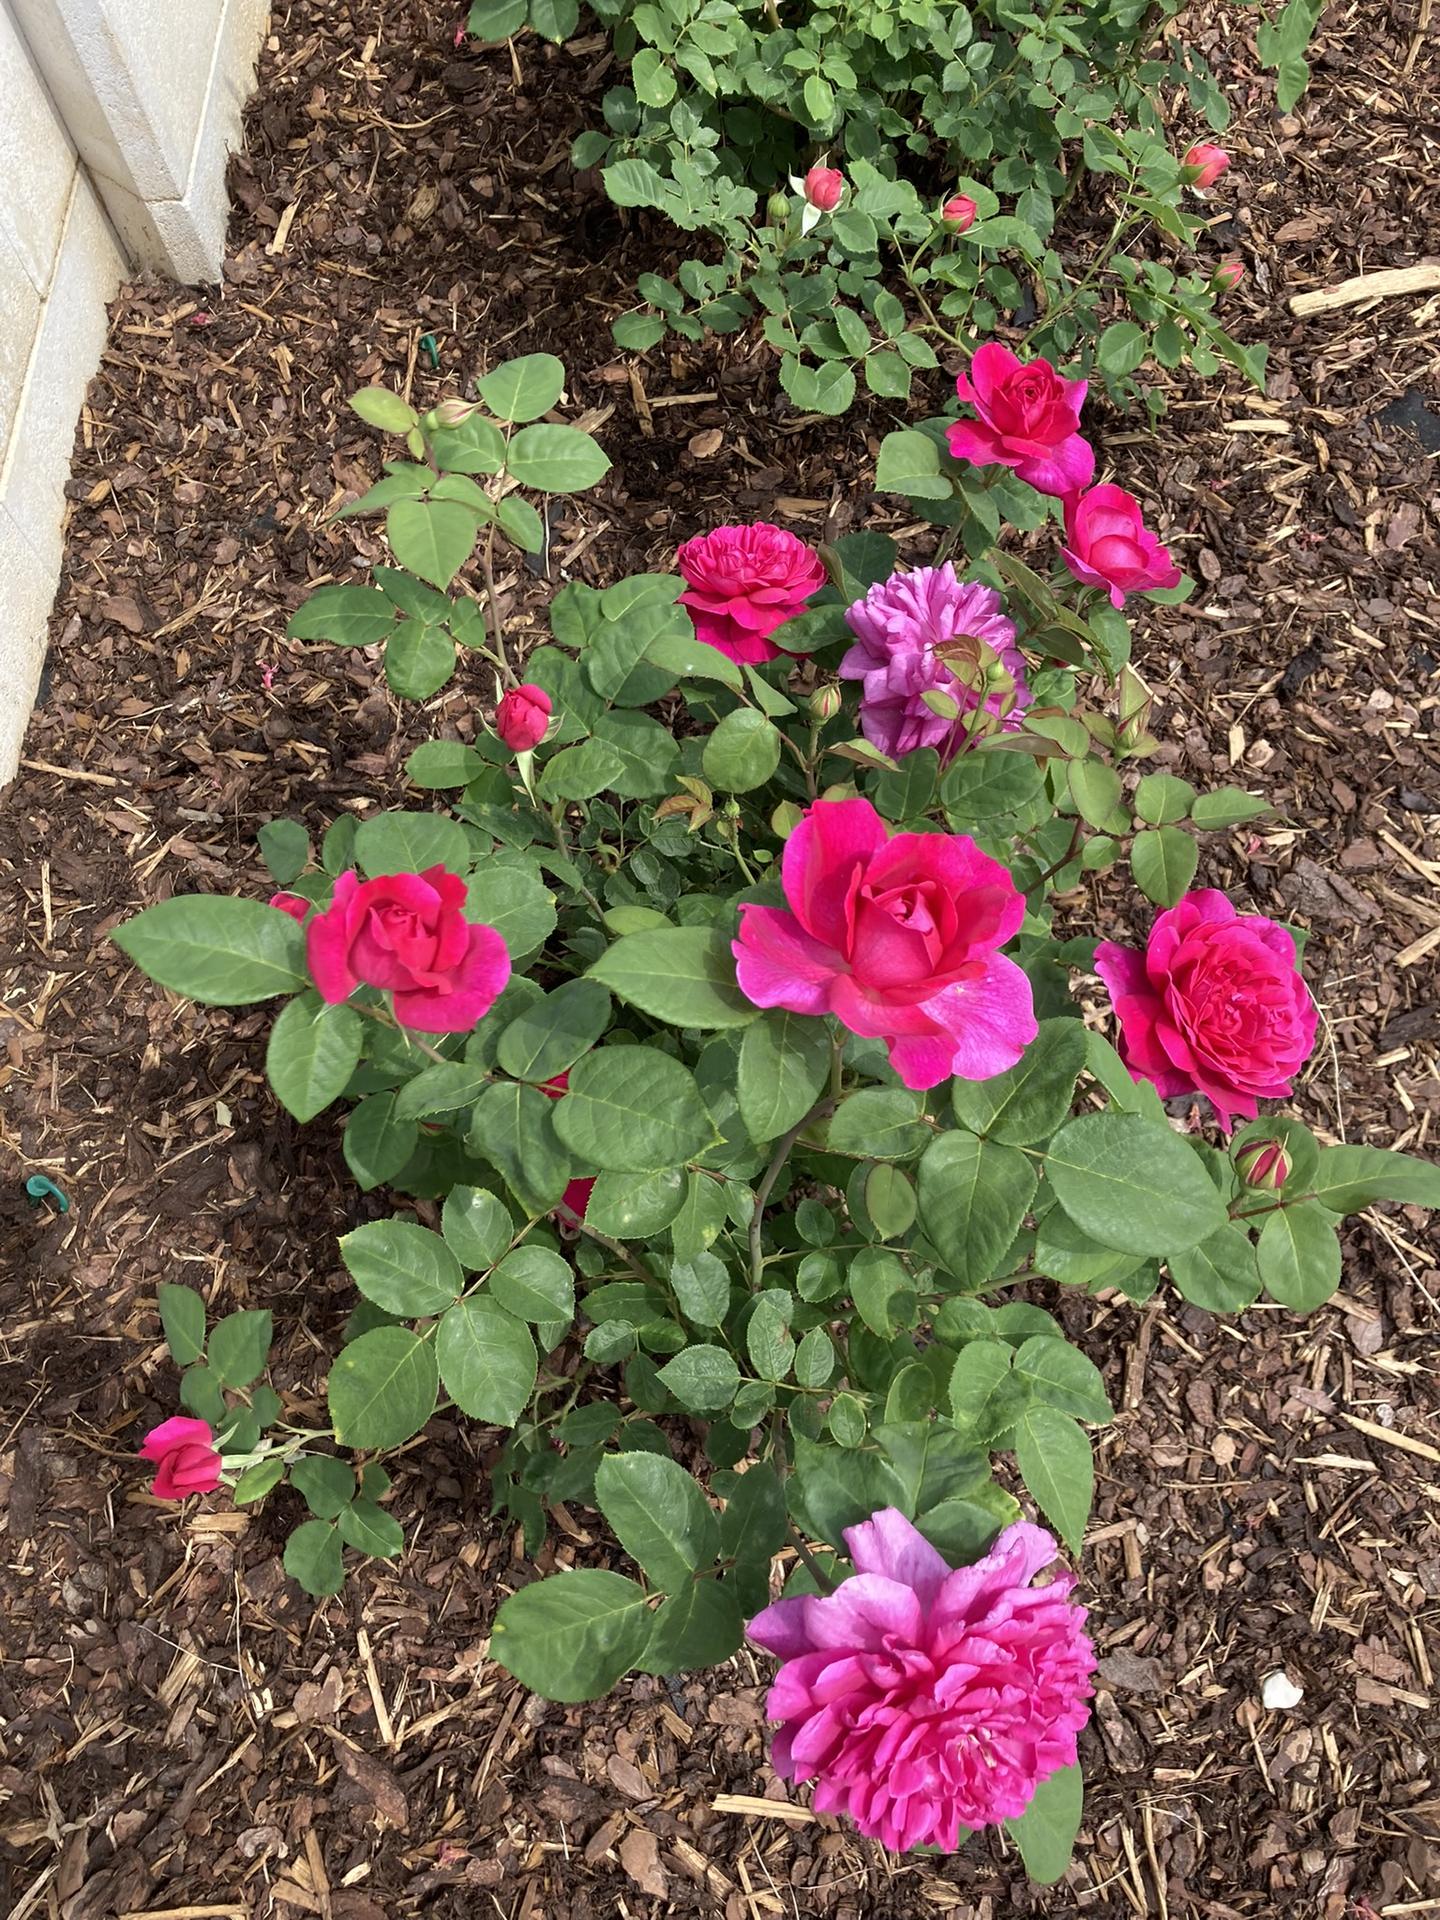 Zahrada 2022 - Sophy ´s Rose kvete jako o zavod- zatimco ostatni ruze maji povetsinou jen zelena poupata, Sofca naprosto bez rozpaku otevira jeden kvet za druhym! Zatim si vede skvele, uvidime, jestli ji ta pile vydrzi celou sezonu... mam ji nove, tak jsem zvedava